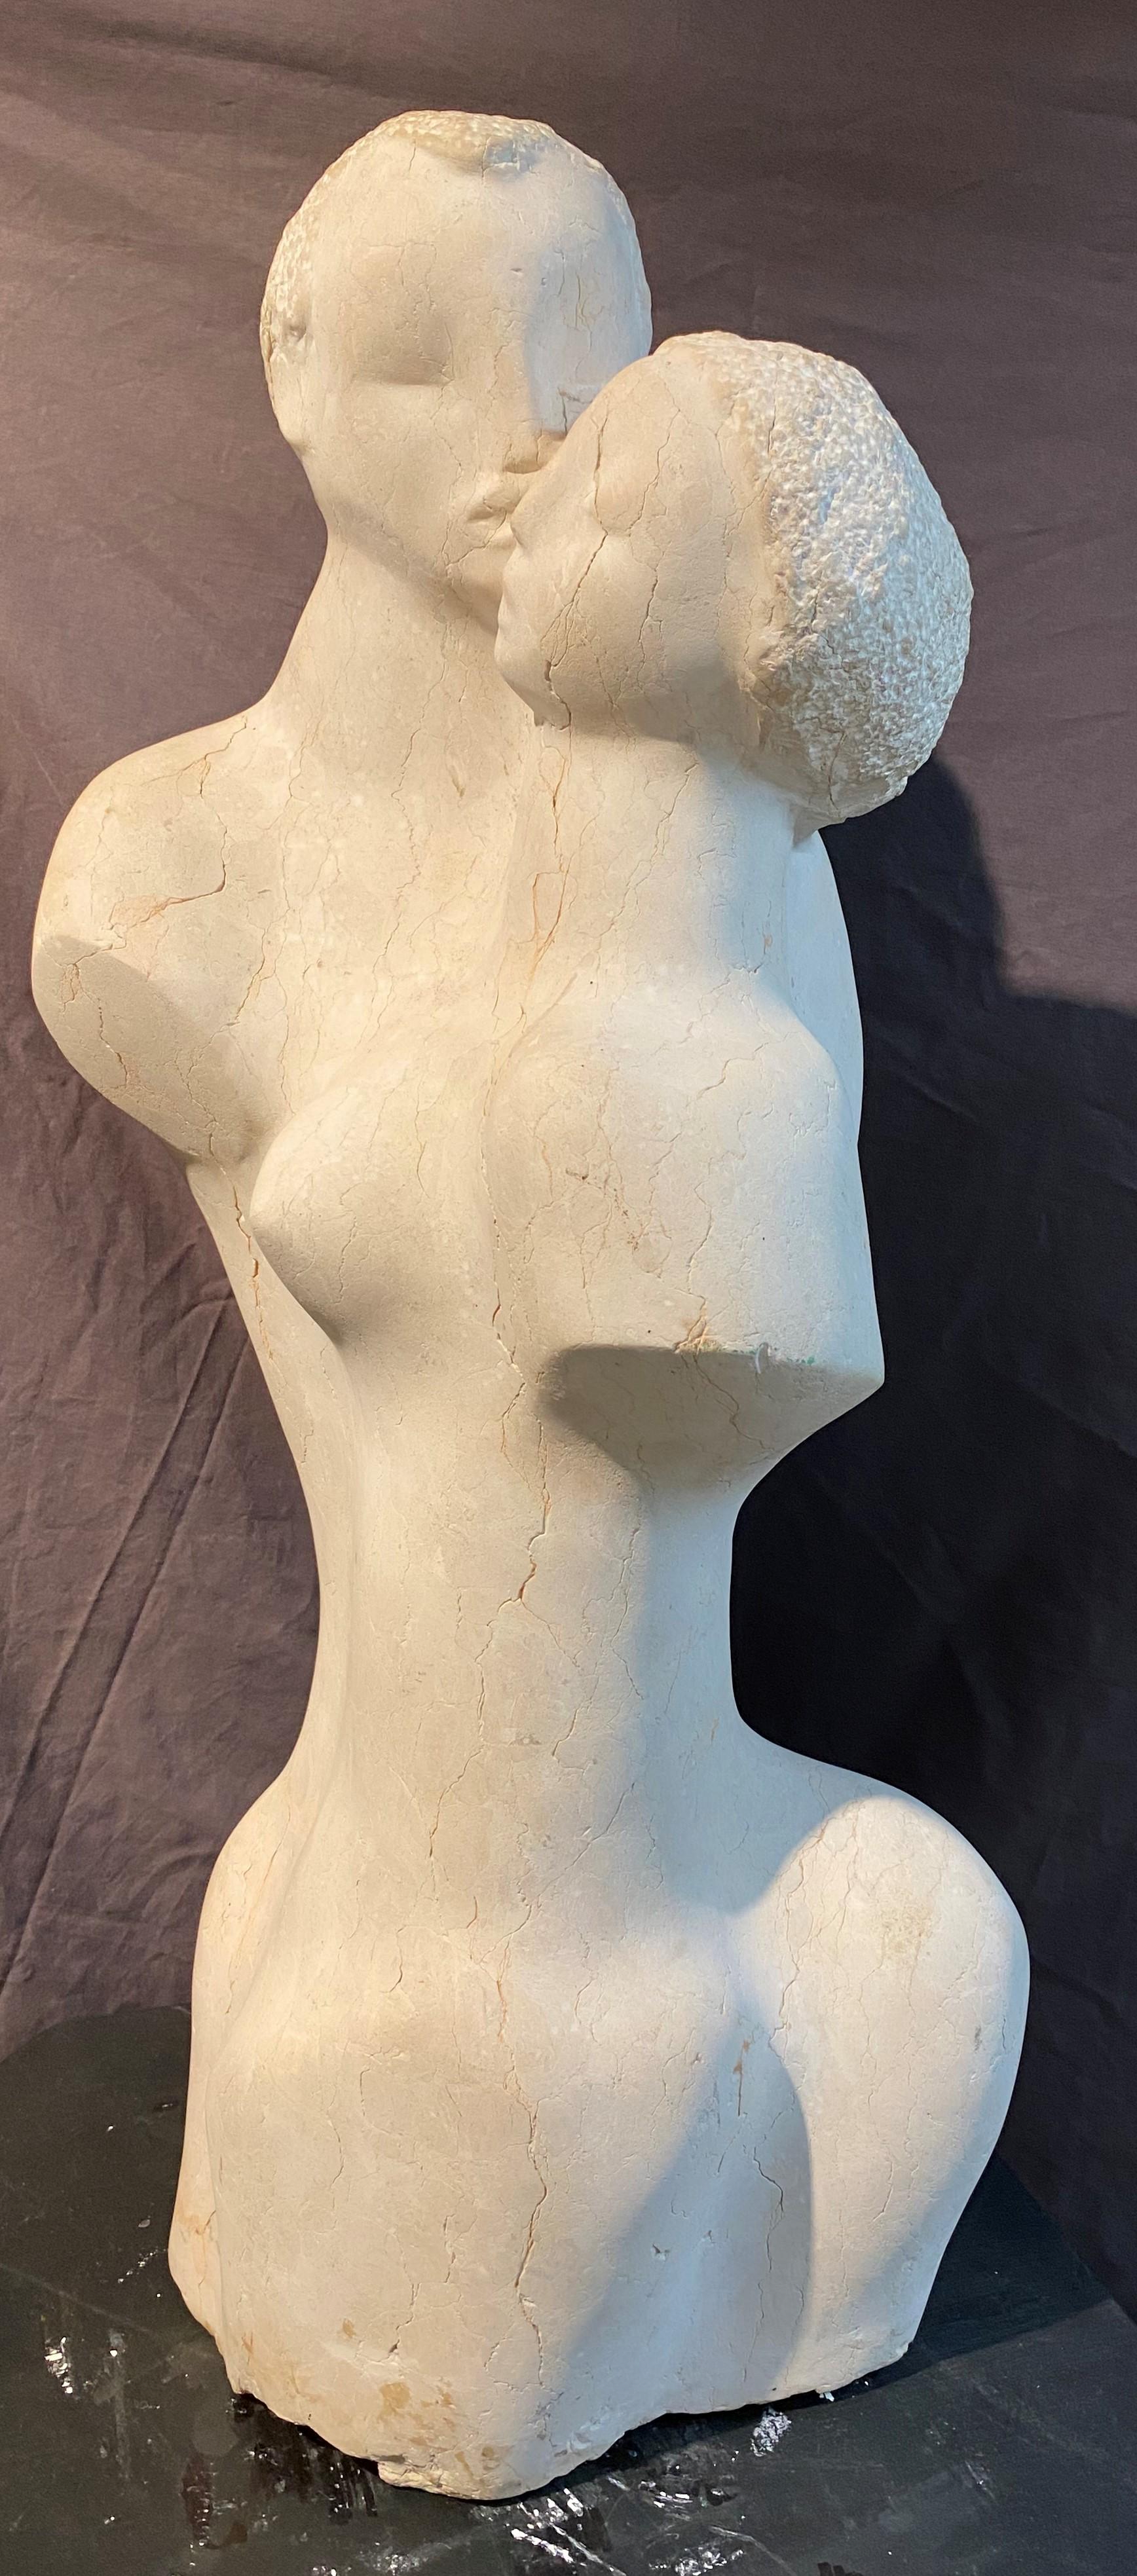 Liebende – Sculpture von William Zorach